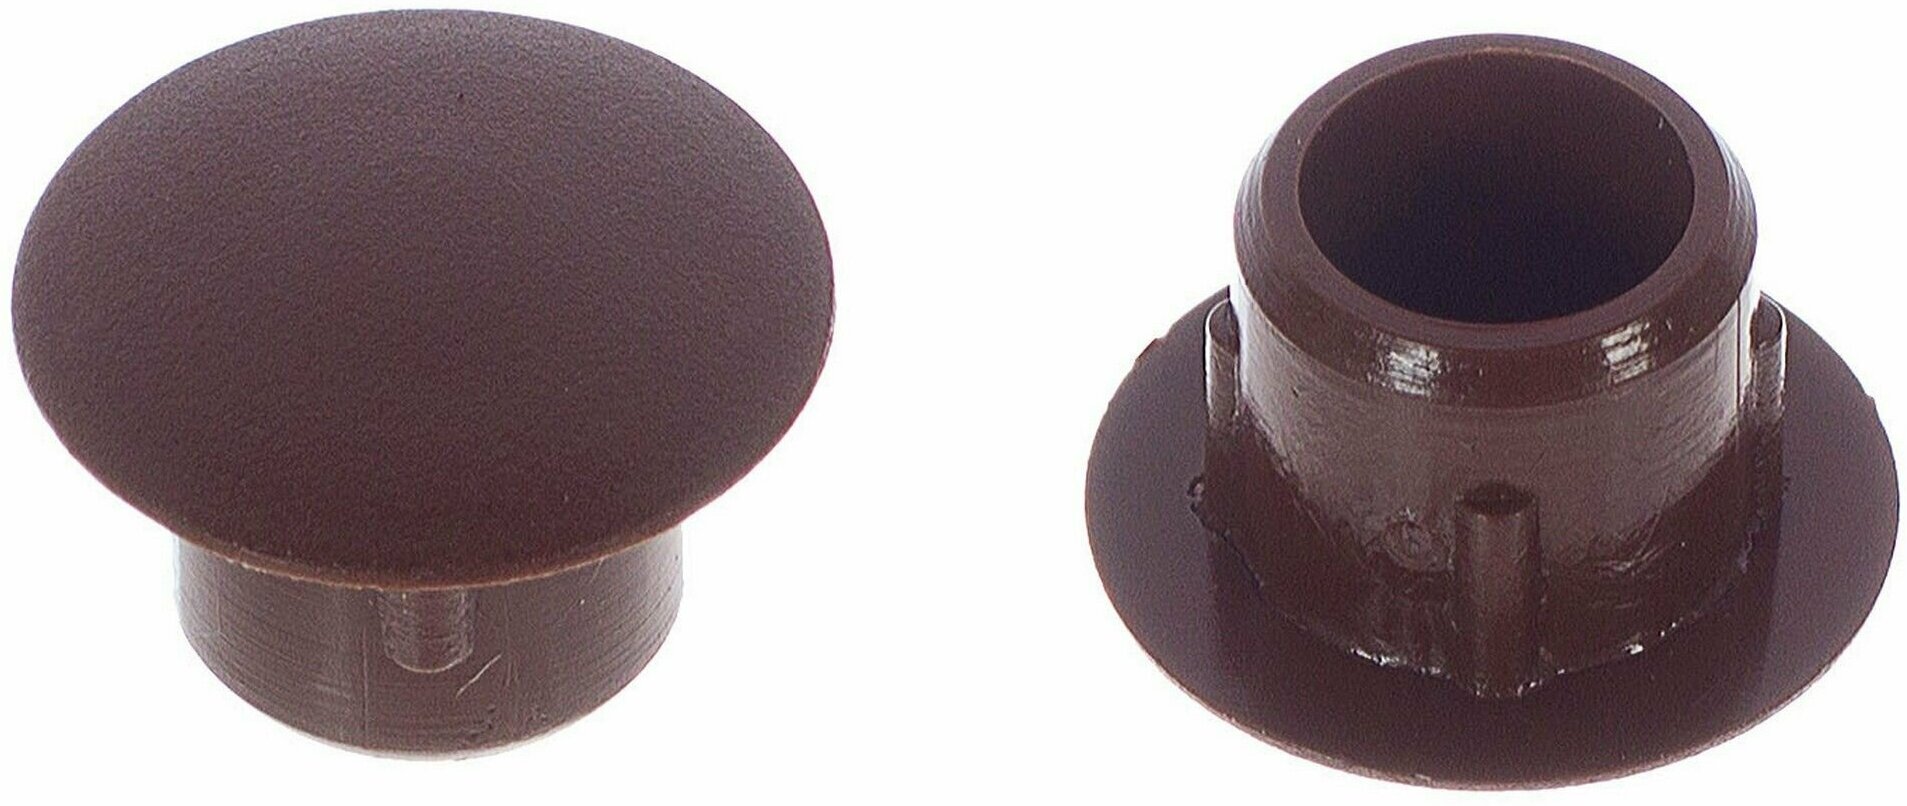 Заглушка на отверстие 10 мм полиэтилен цвет коричневый, 35 шт.